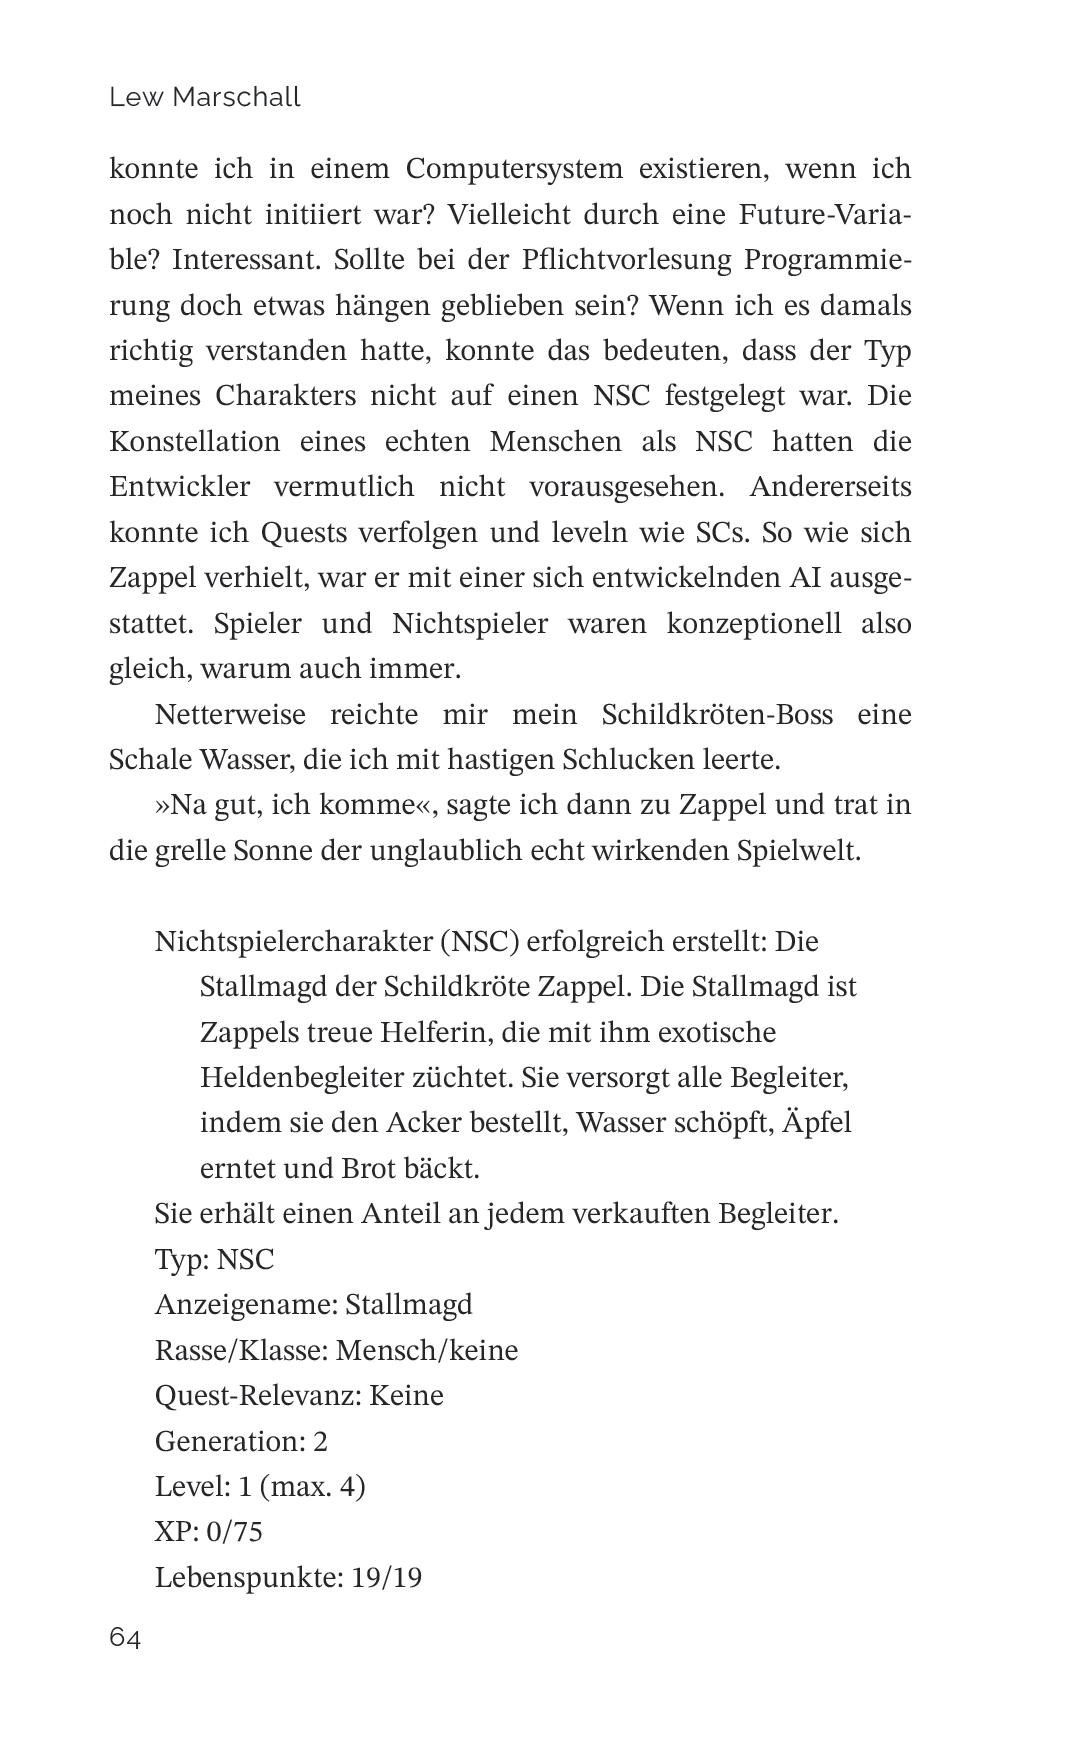 Der Fluch des schwarzen Phönix – deutscher LitRPG-Roman von Lew Marschall.